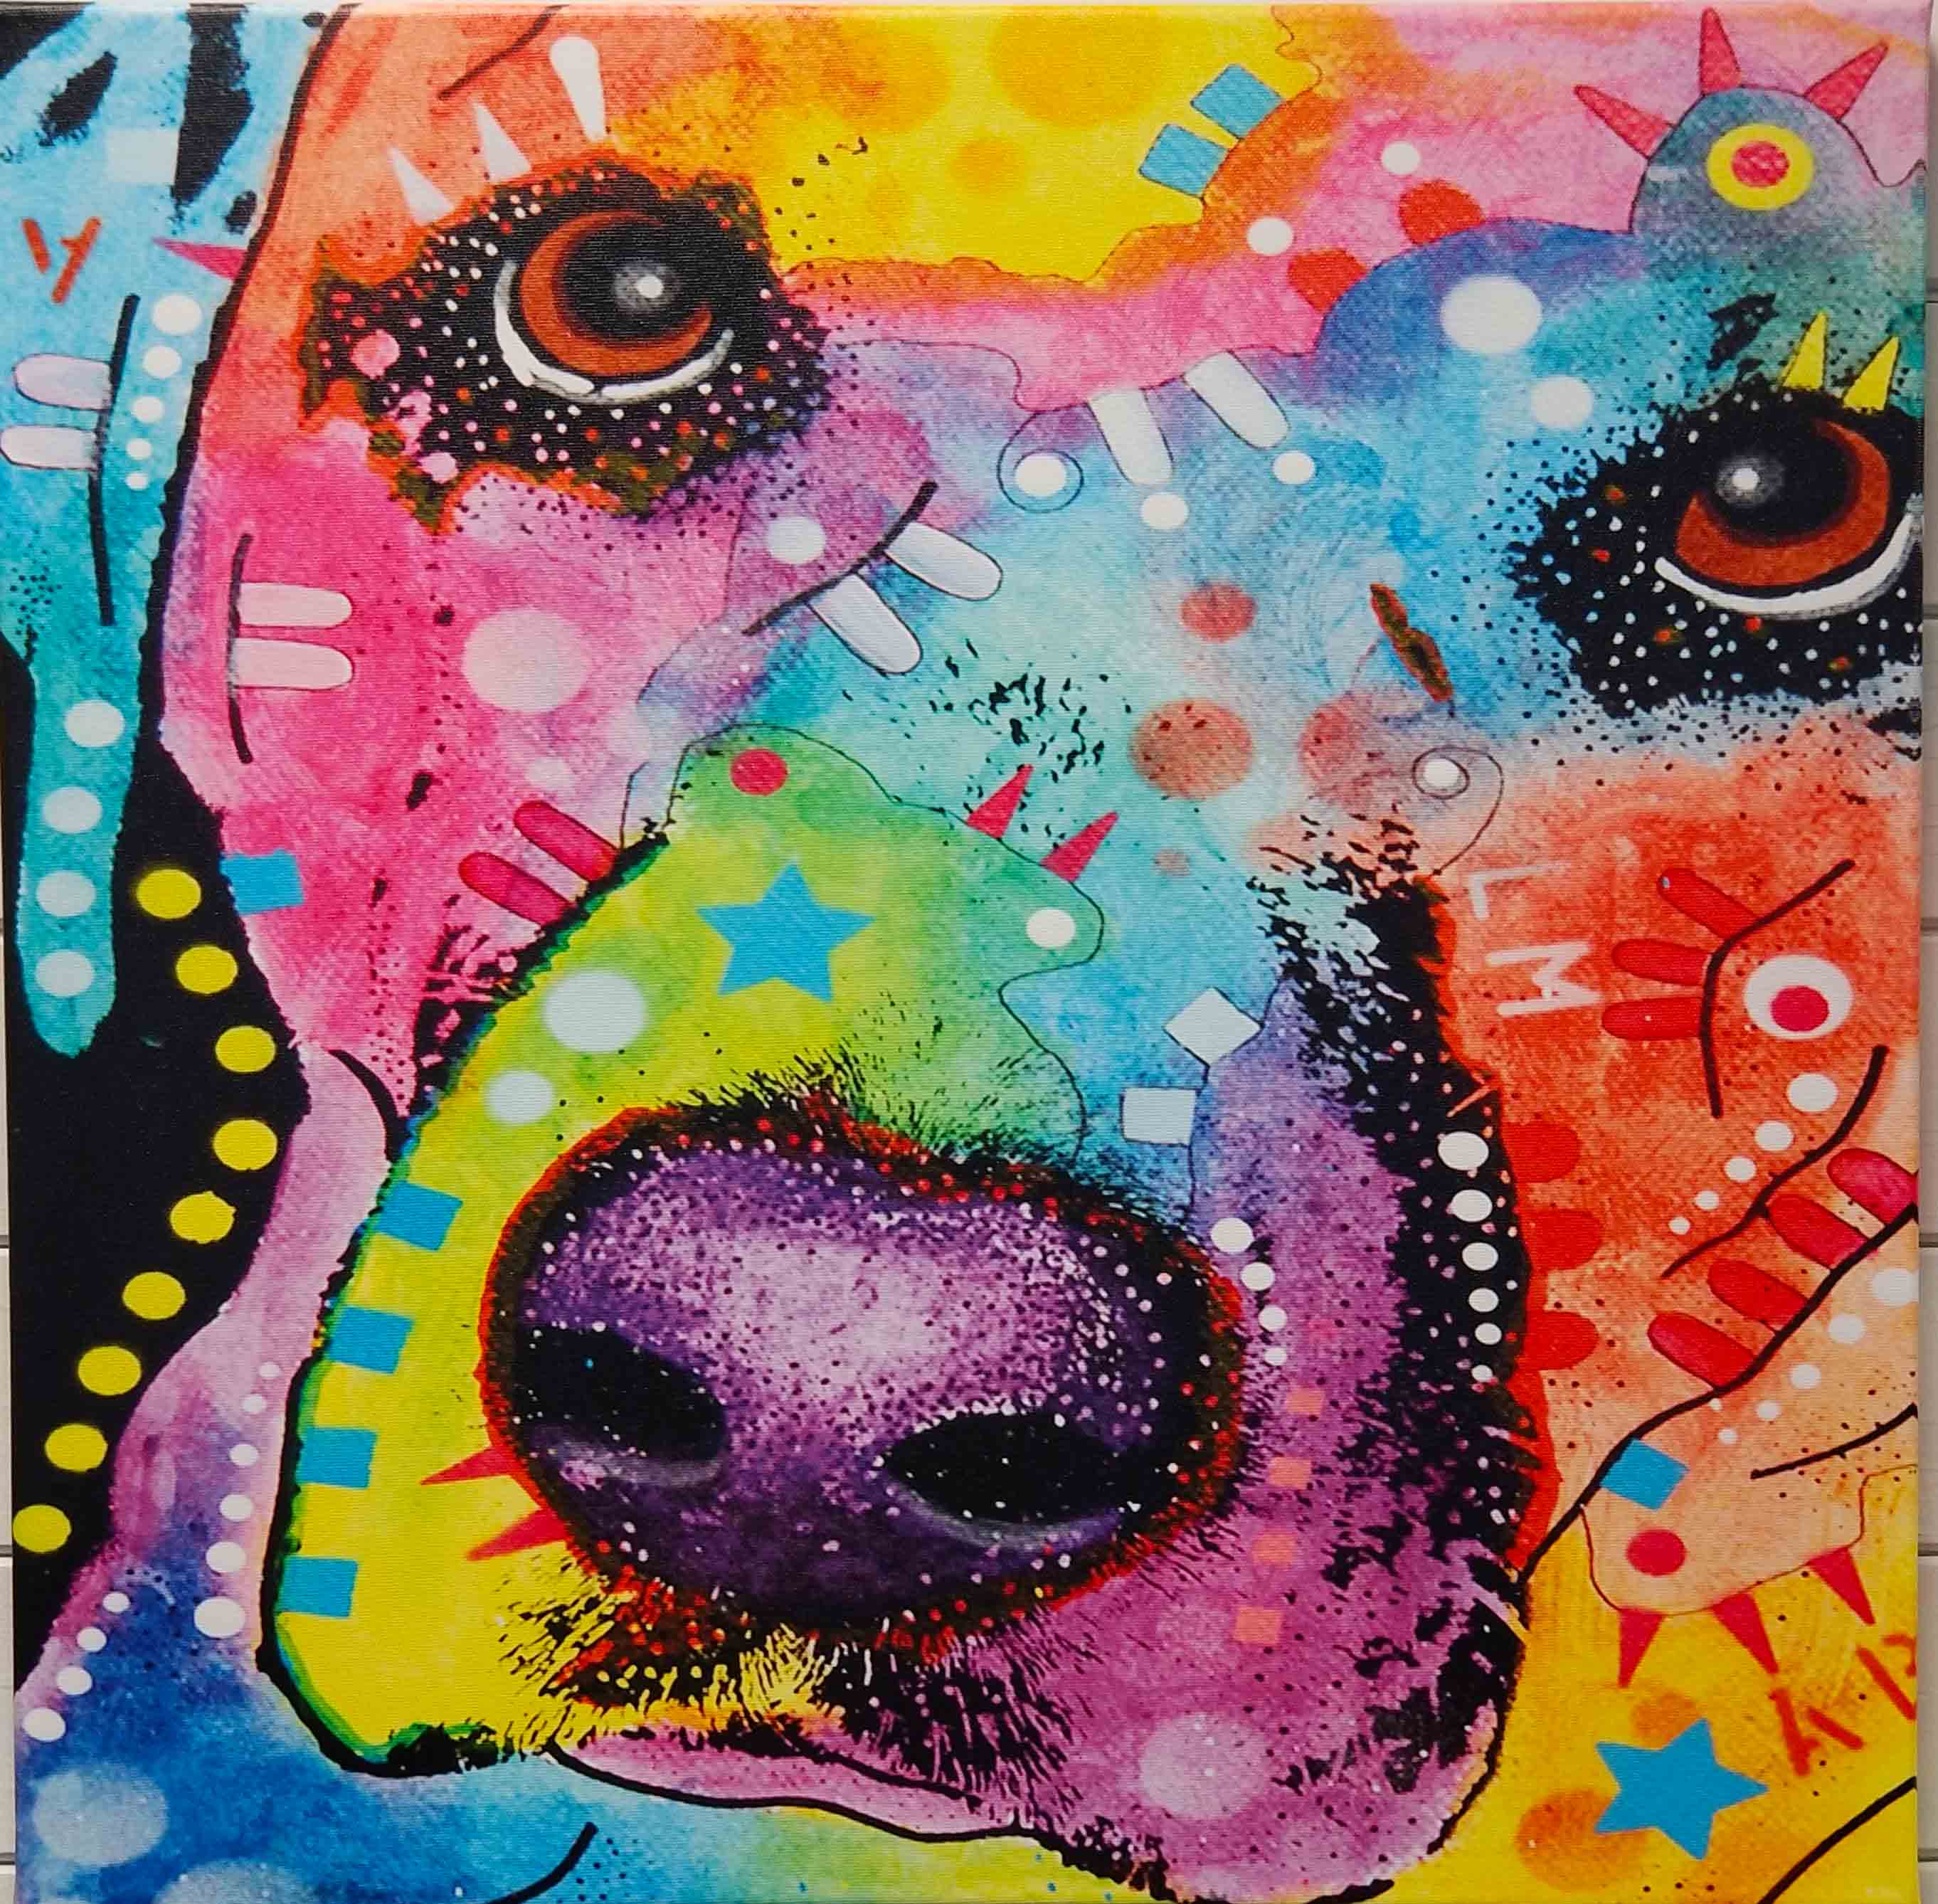 colorful dog